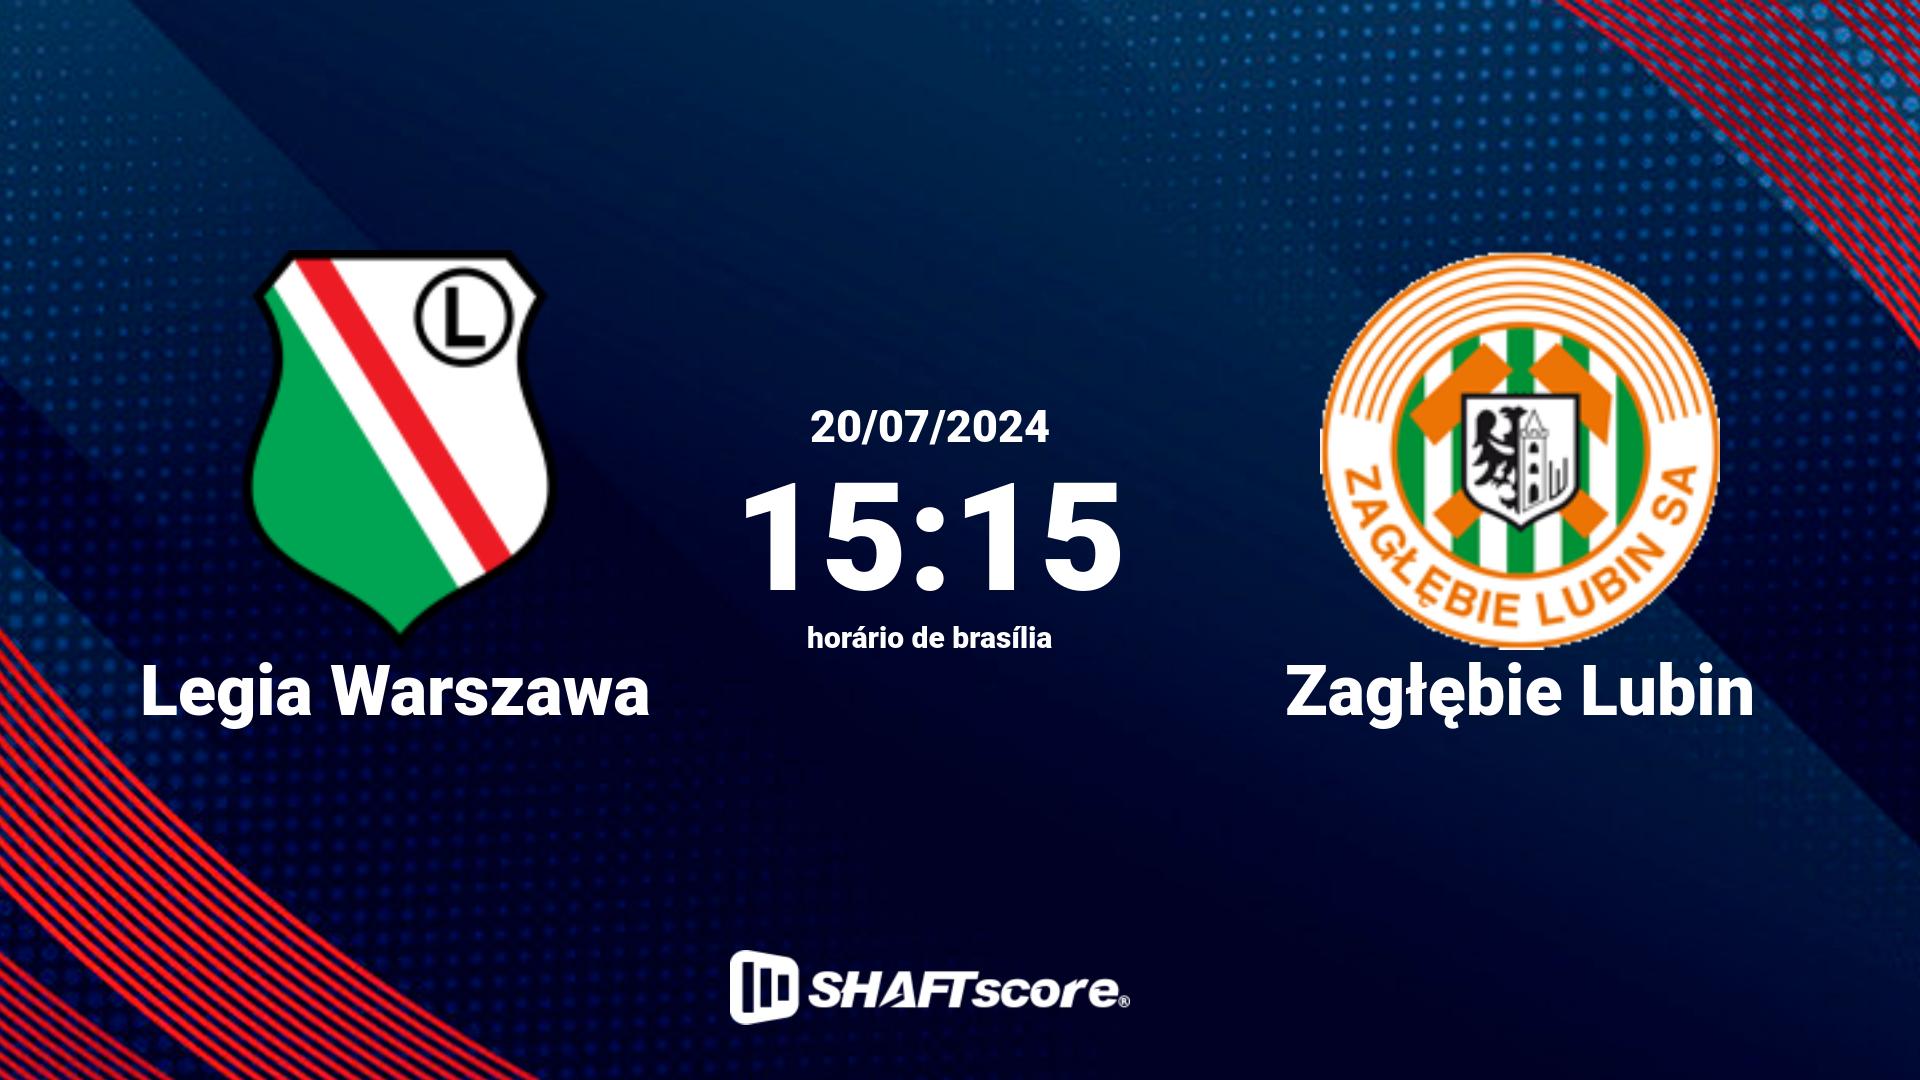 Estatísticas do jogo Legia Warszawa vs Zagłębie Lubin 20.07 15:15